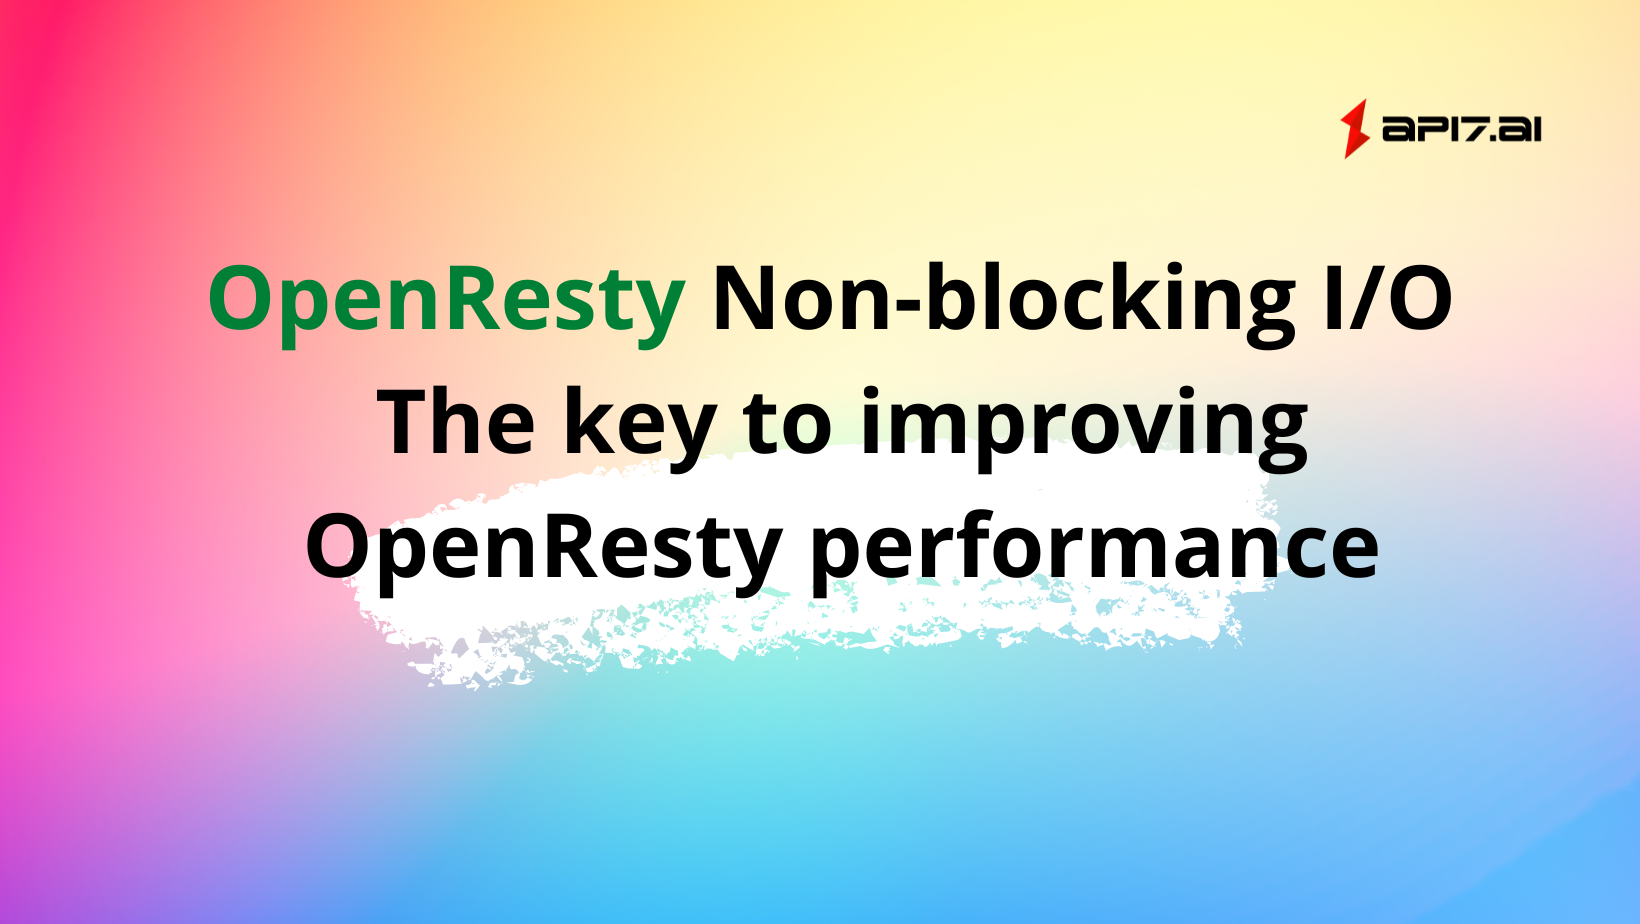 Non-blocking I/O - The key to improving OpenResty performance